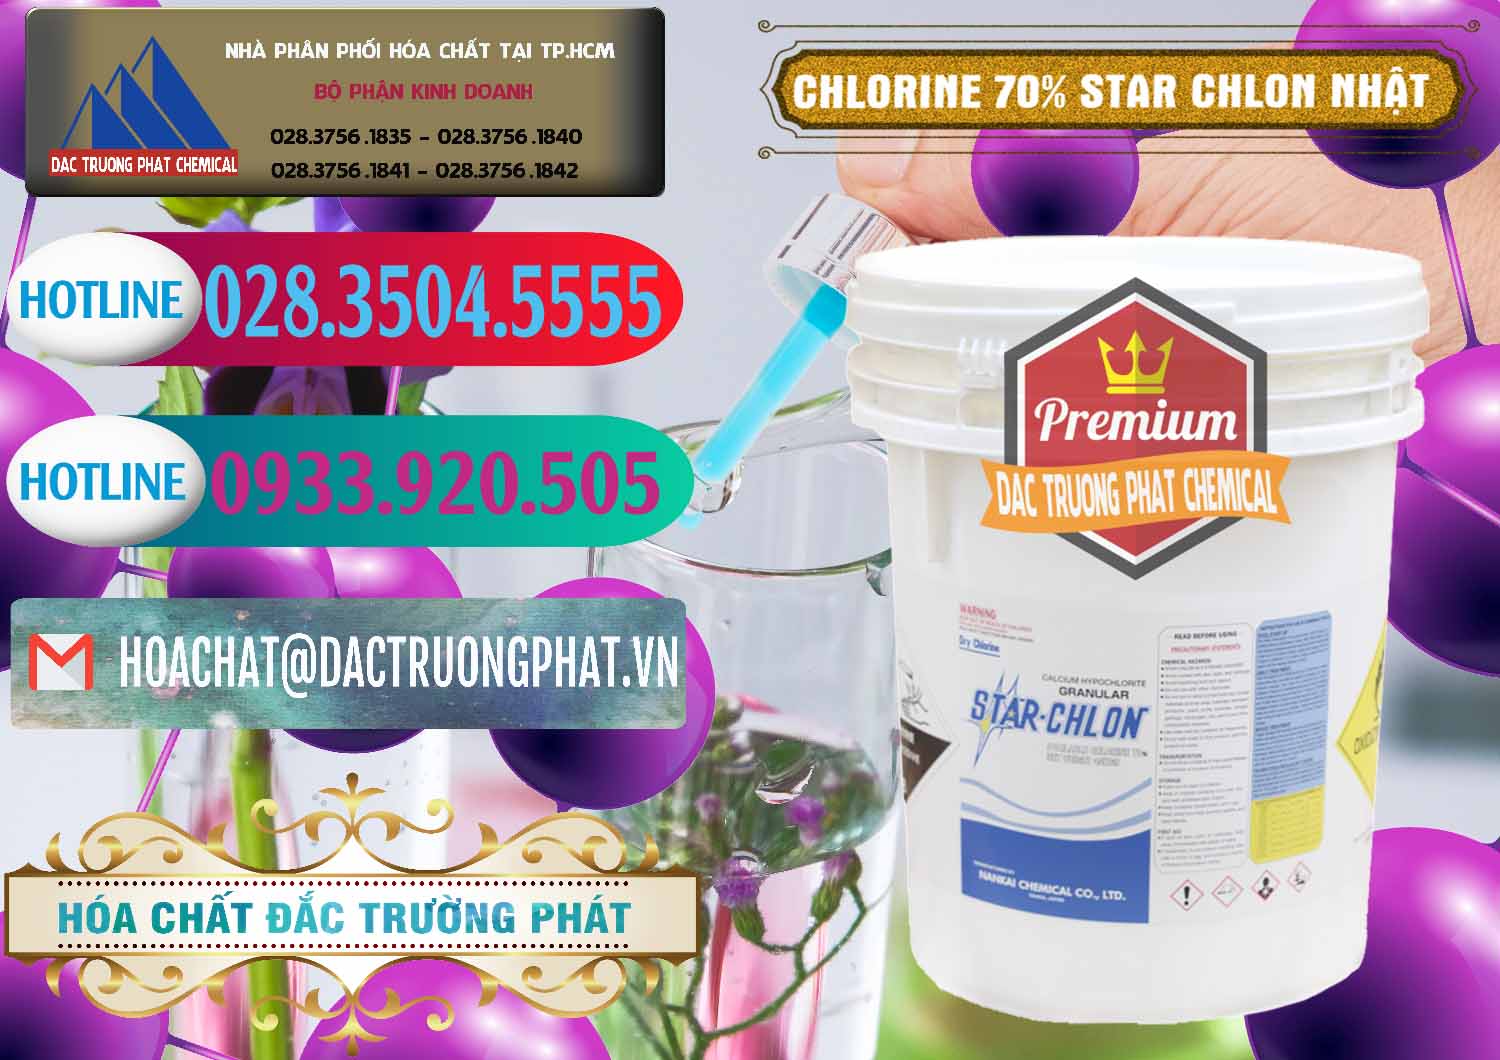 Đơn vị bán và phân phối Clorin – Chlorine 70% Star Chlon Nhật Bản Japan - 0243 - Đơn vị chuyên bán & cung cấp hóa chất tại TP.HCM - truongphat.vn